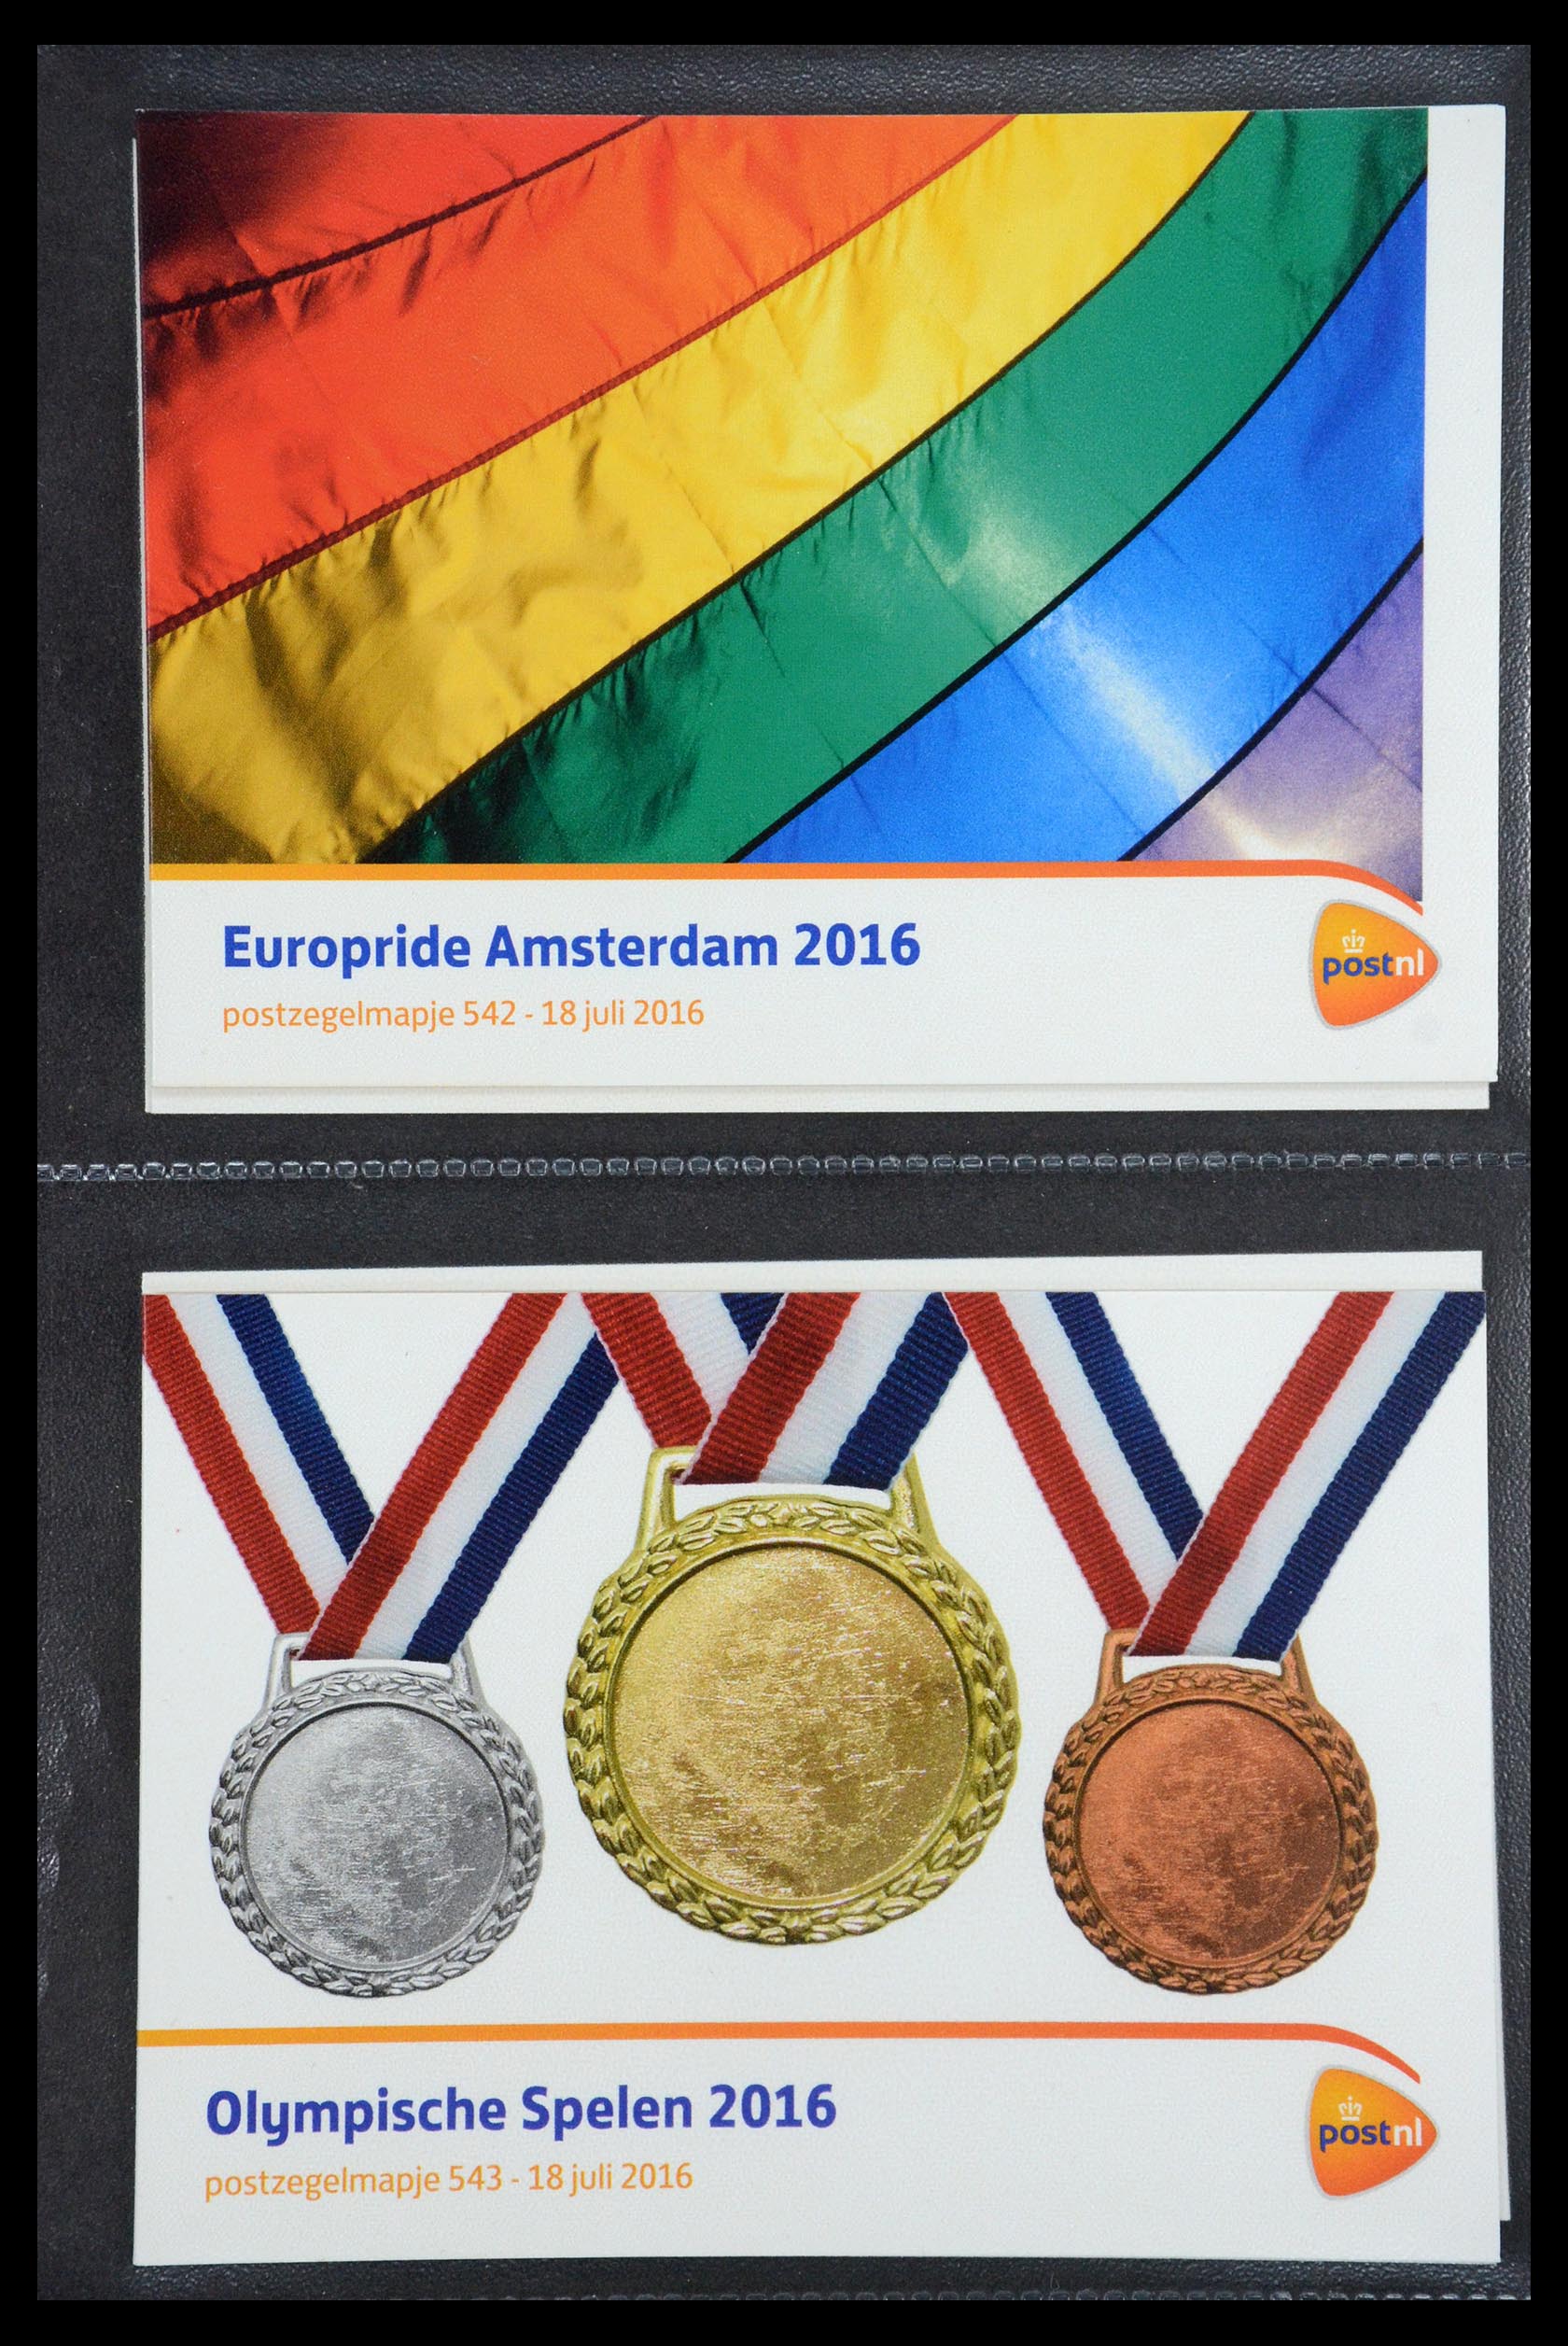 35187 323 - Stamp Collection 35187 Netherlands PTT presentation packs 1982-2019!